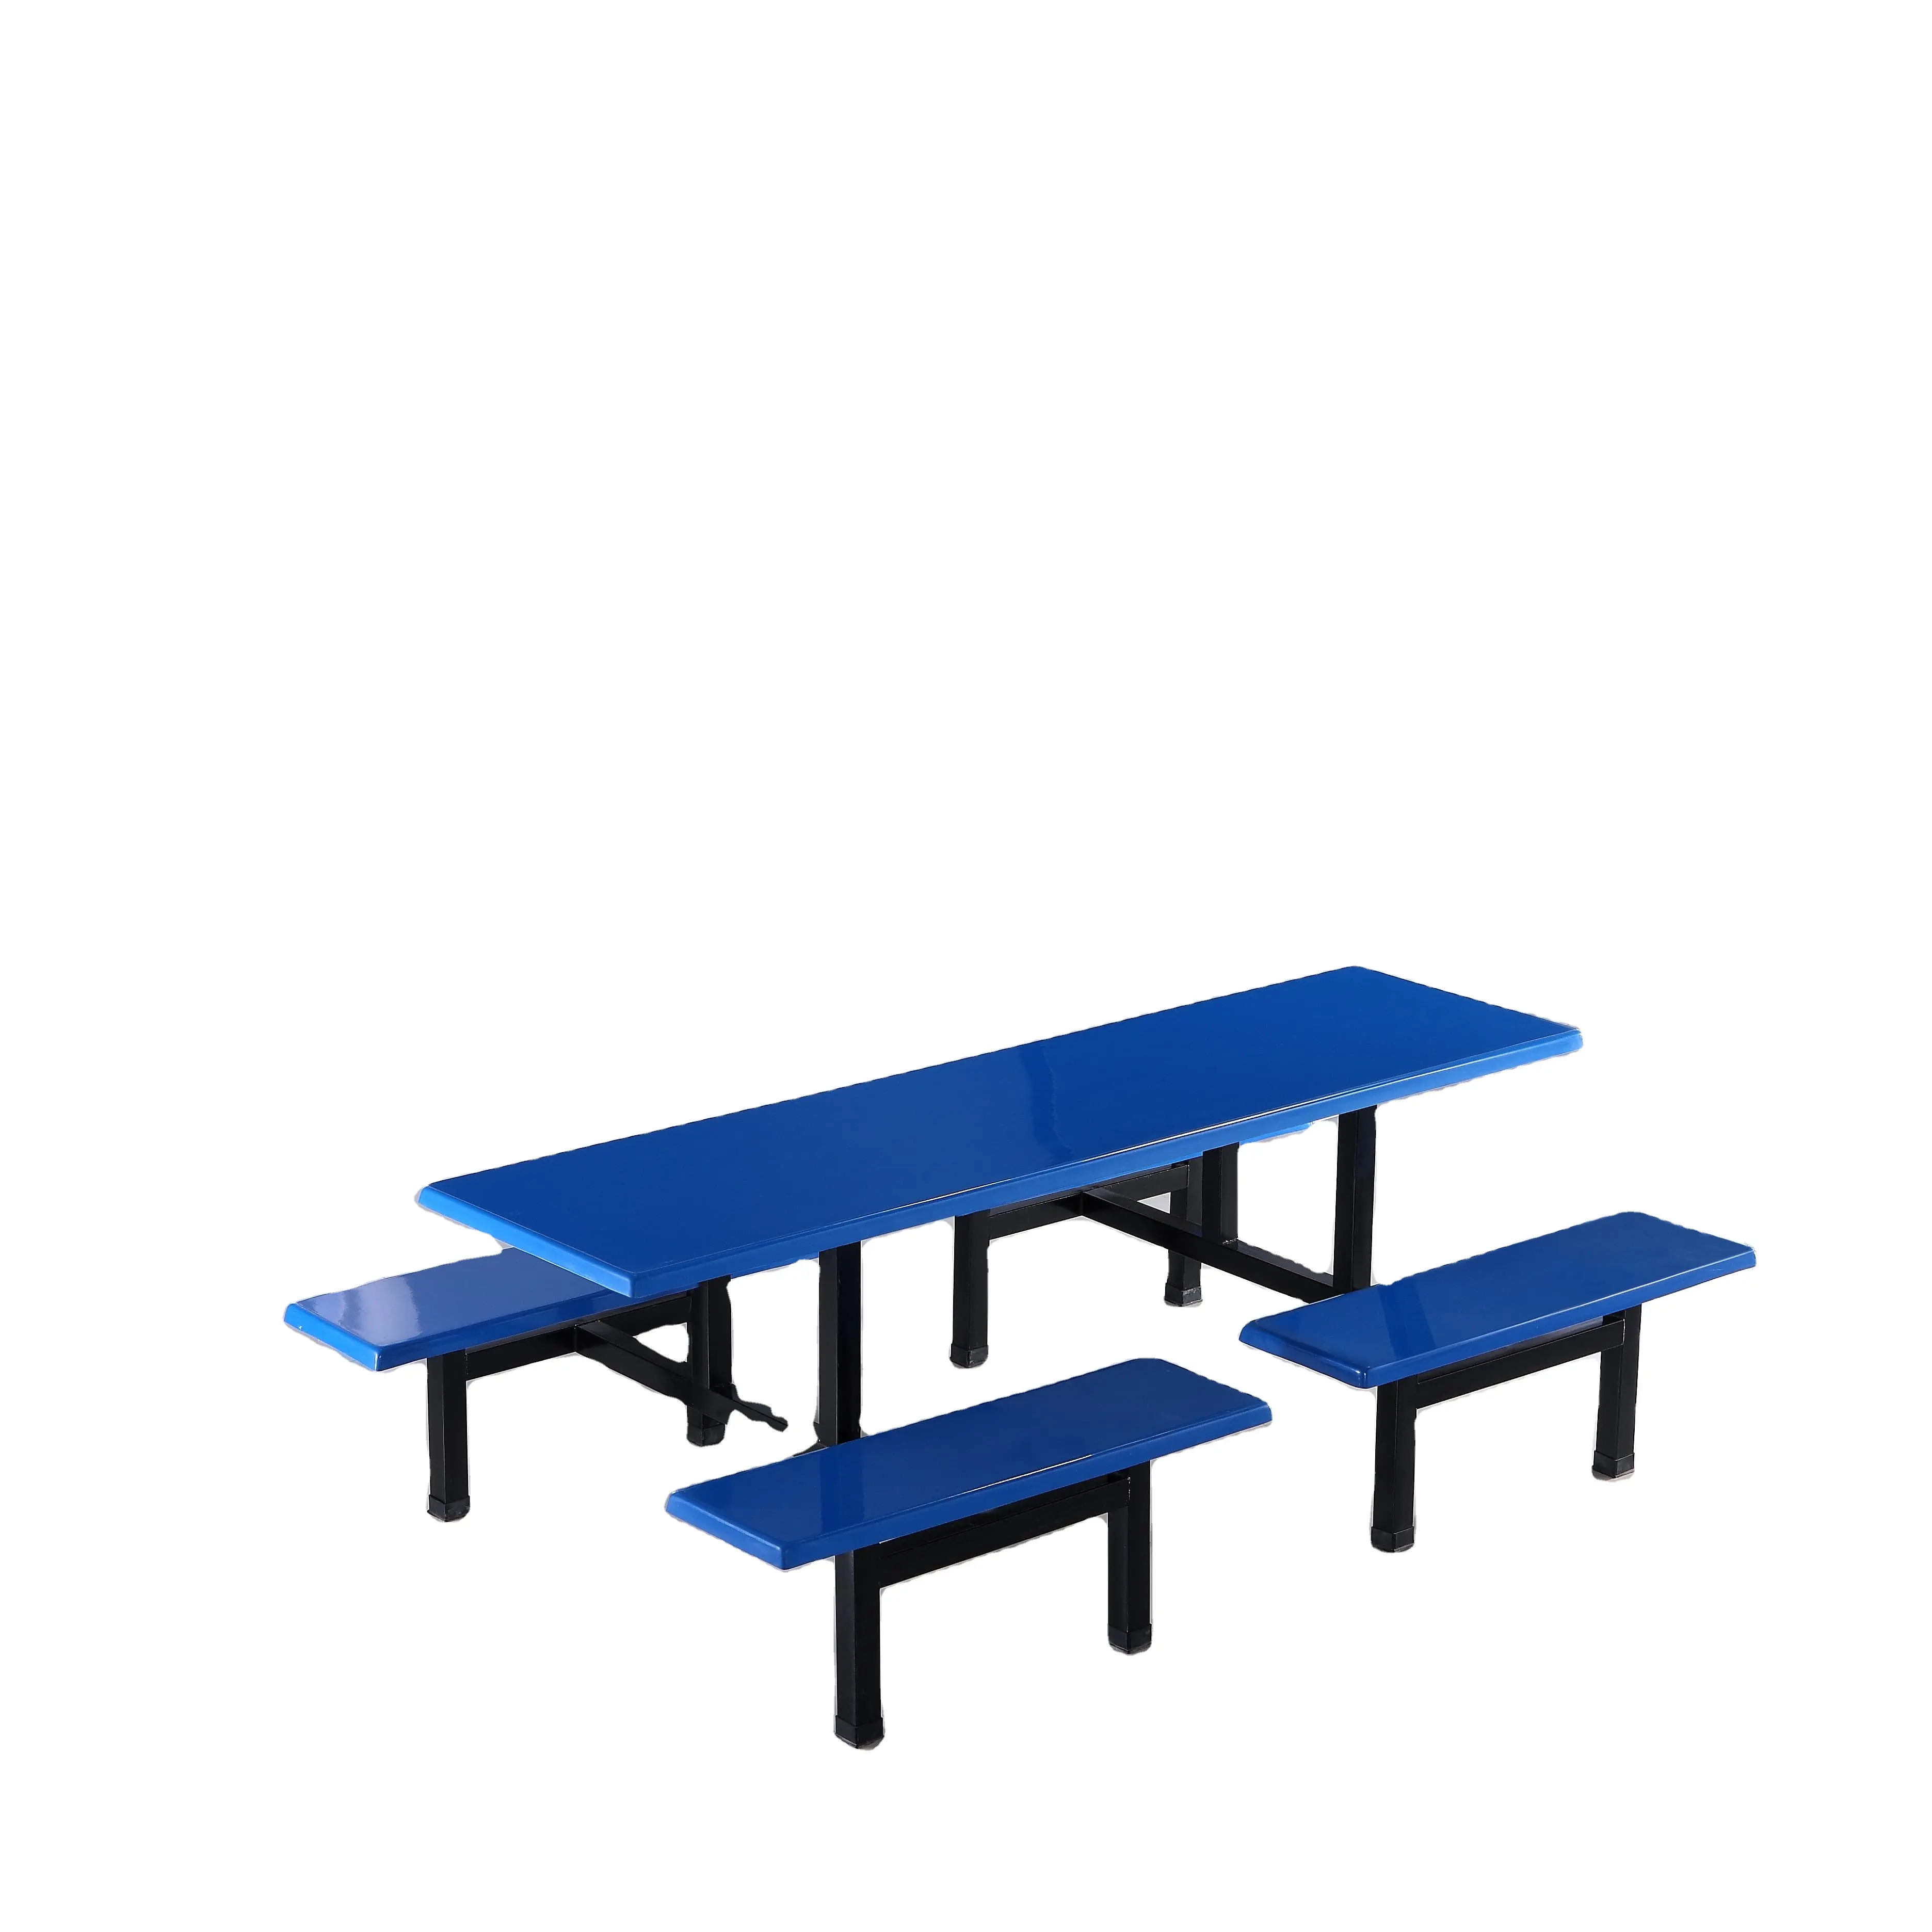 Mobilier scolaire bon marché, table et chaises de cantine, mobilier d'occasion pour cafétéria